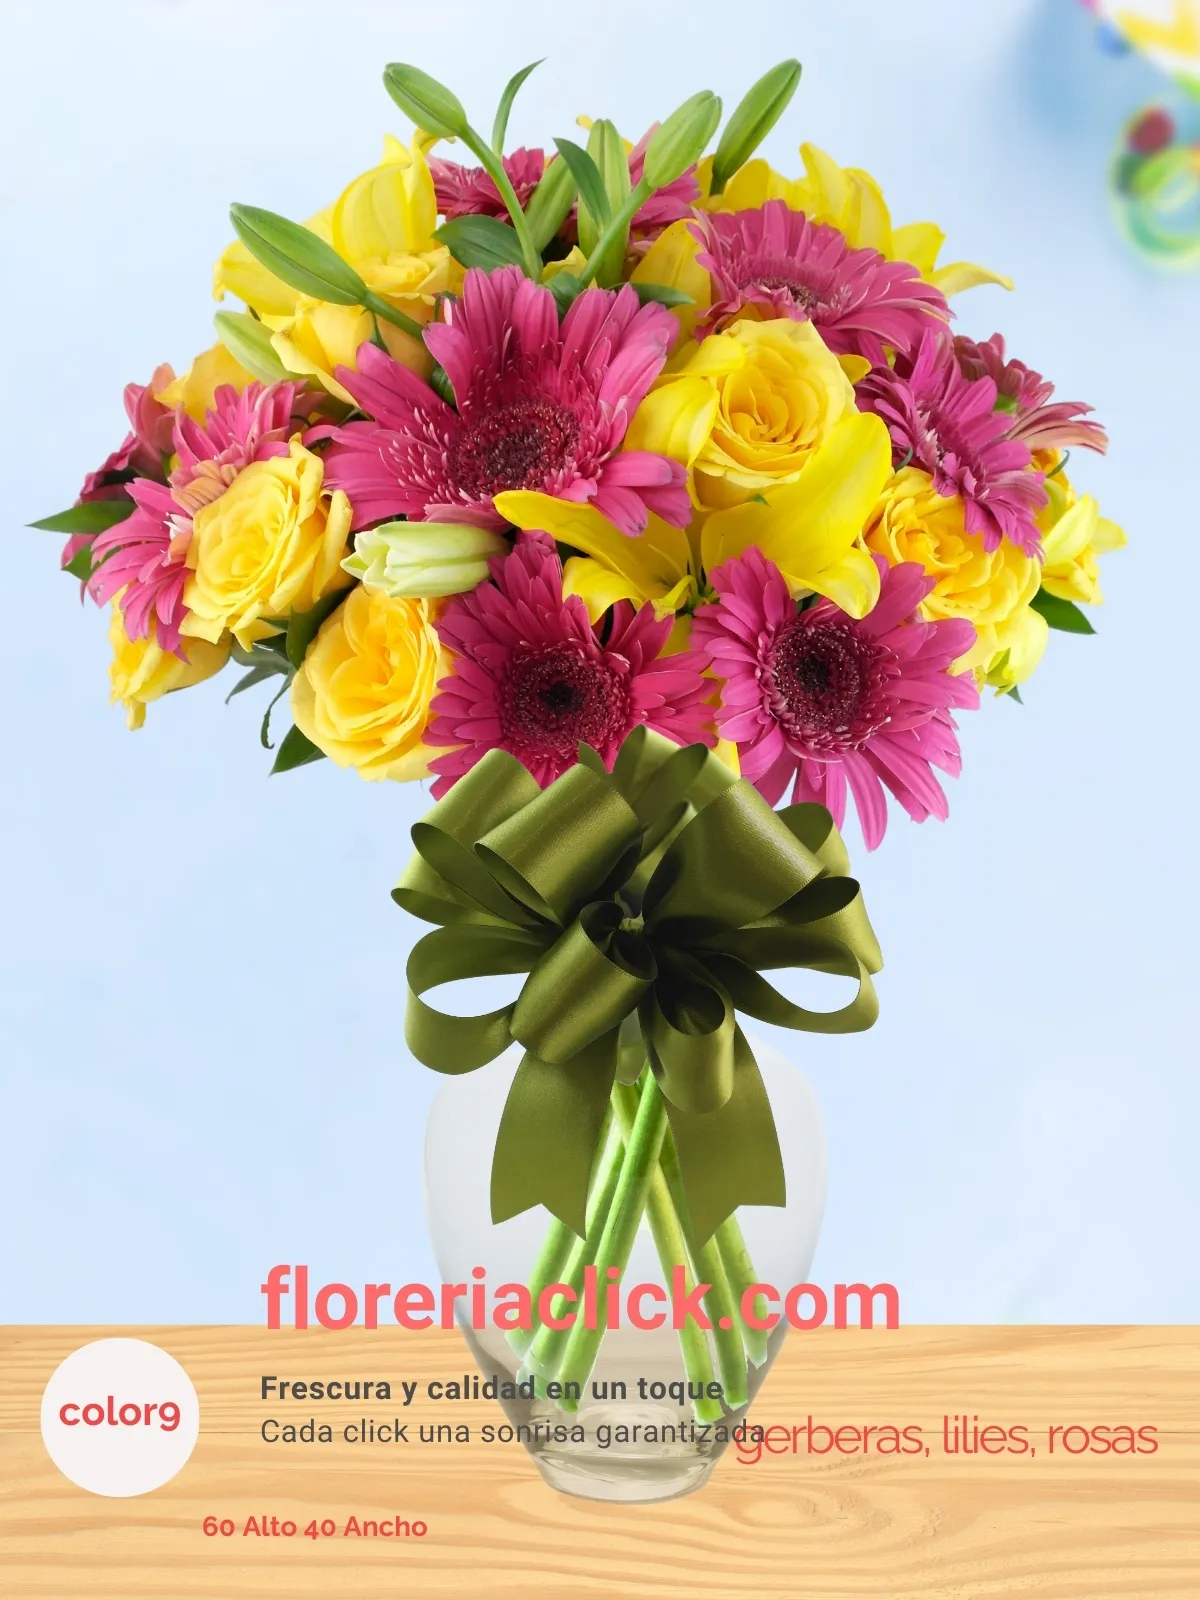 Arreglo floral “Alegría de colores” con 33 flores, rosas, lilies, gerberas.